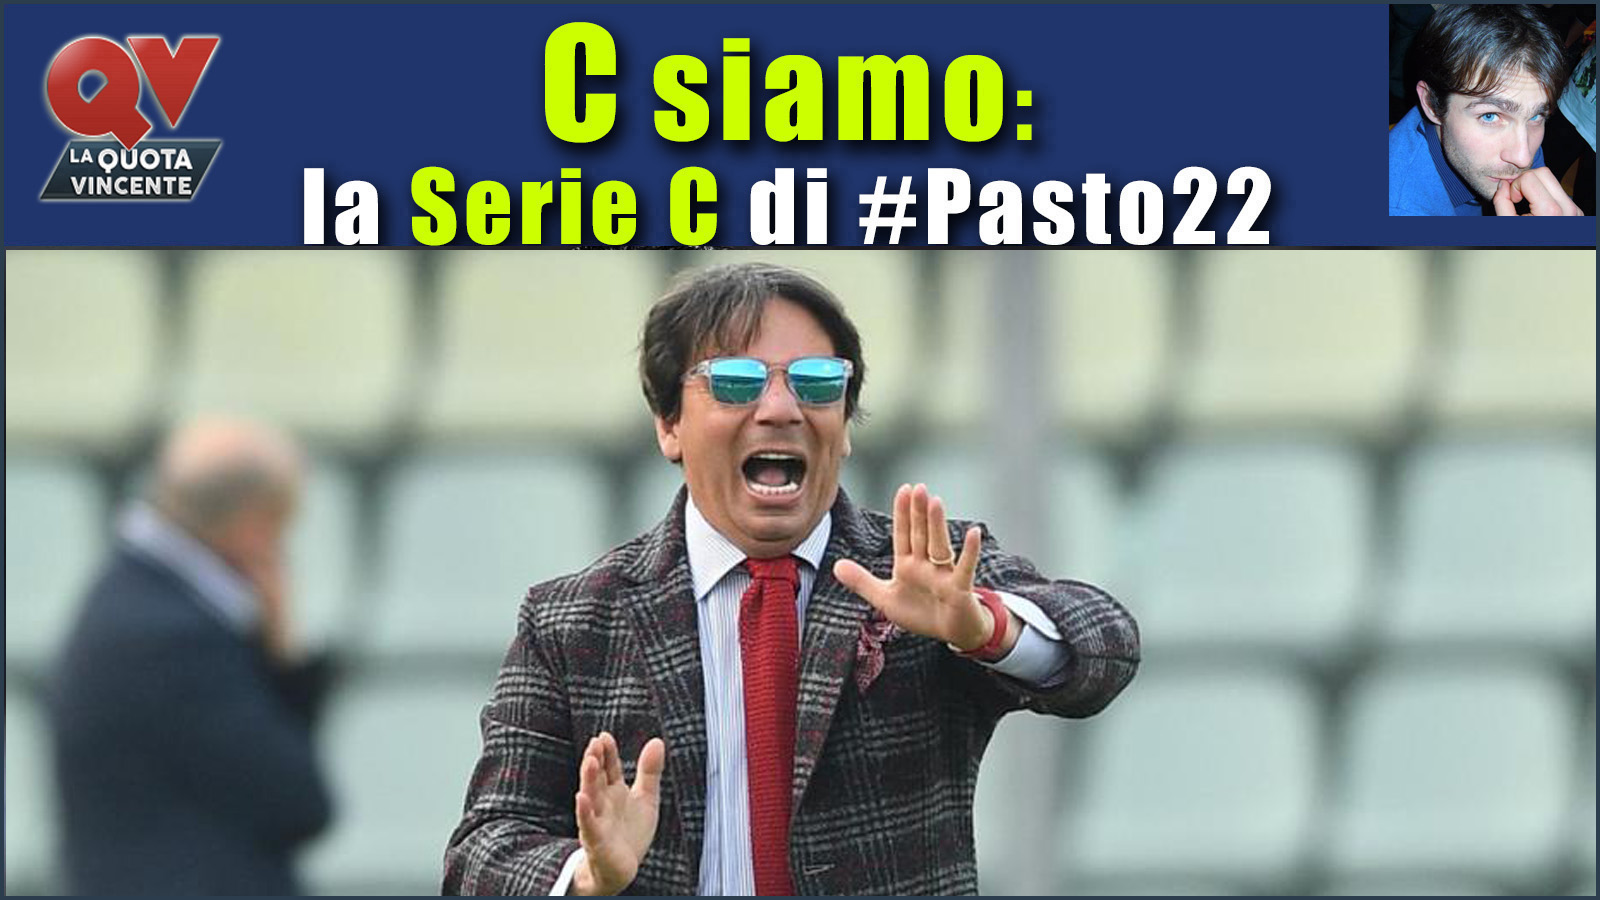 Pronostici Serie C domenica 19 novembre: #Csiamo, il blog di #Pasto22